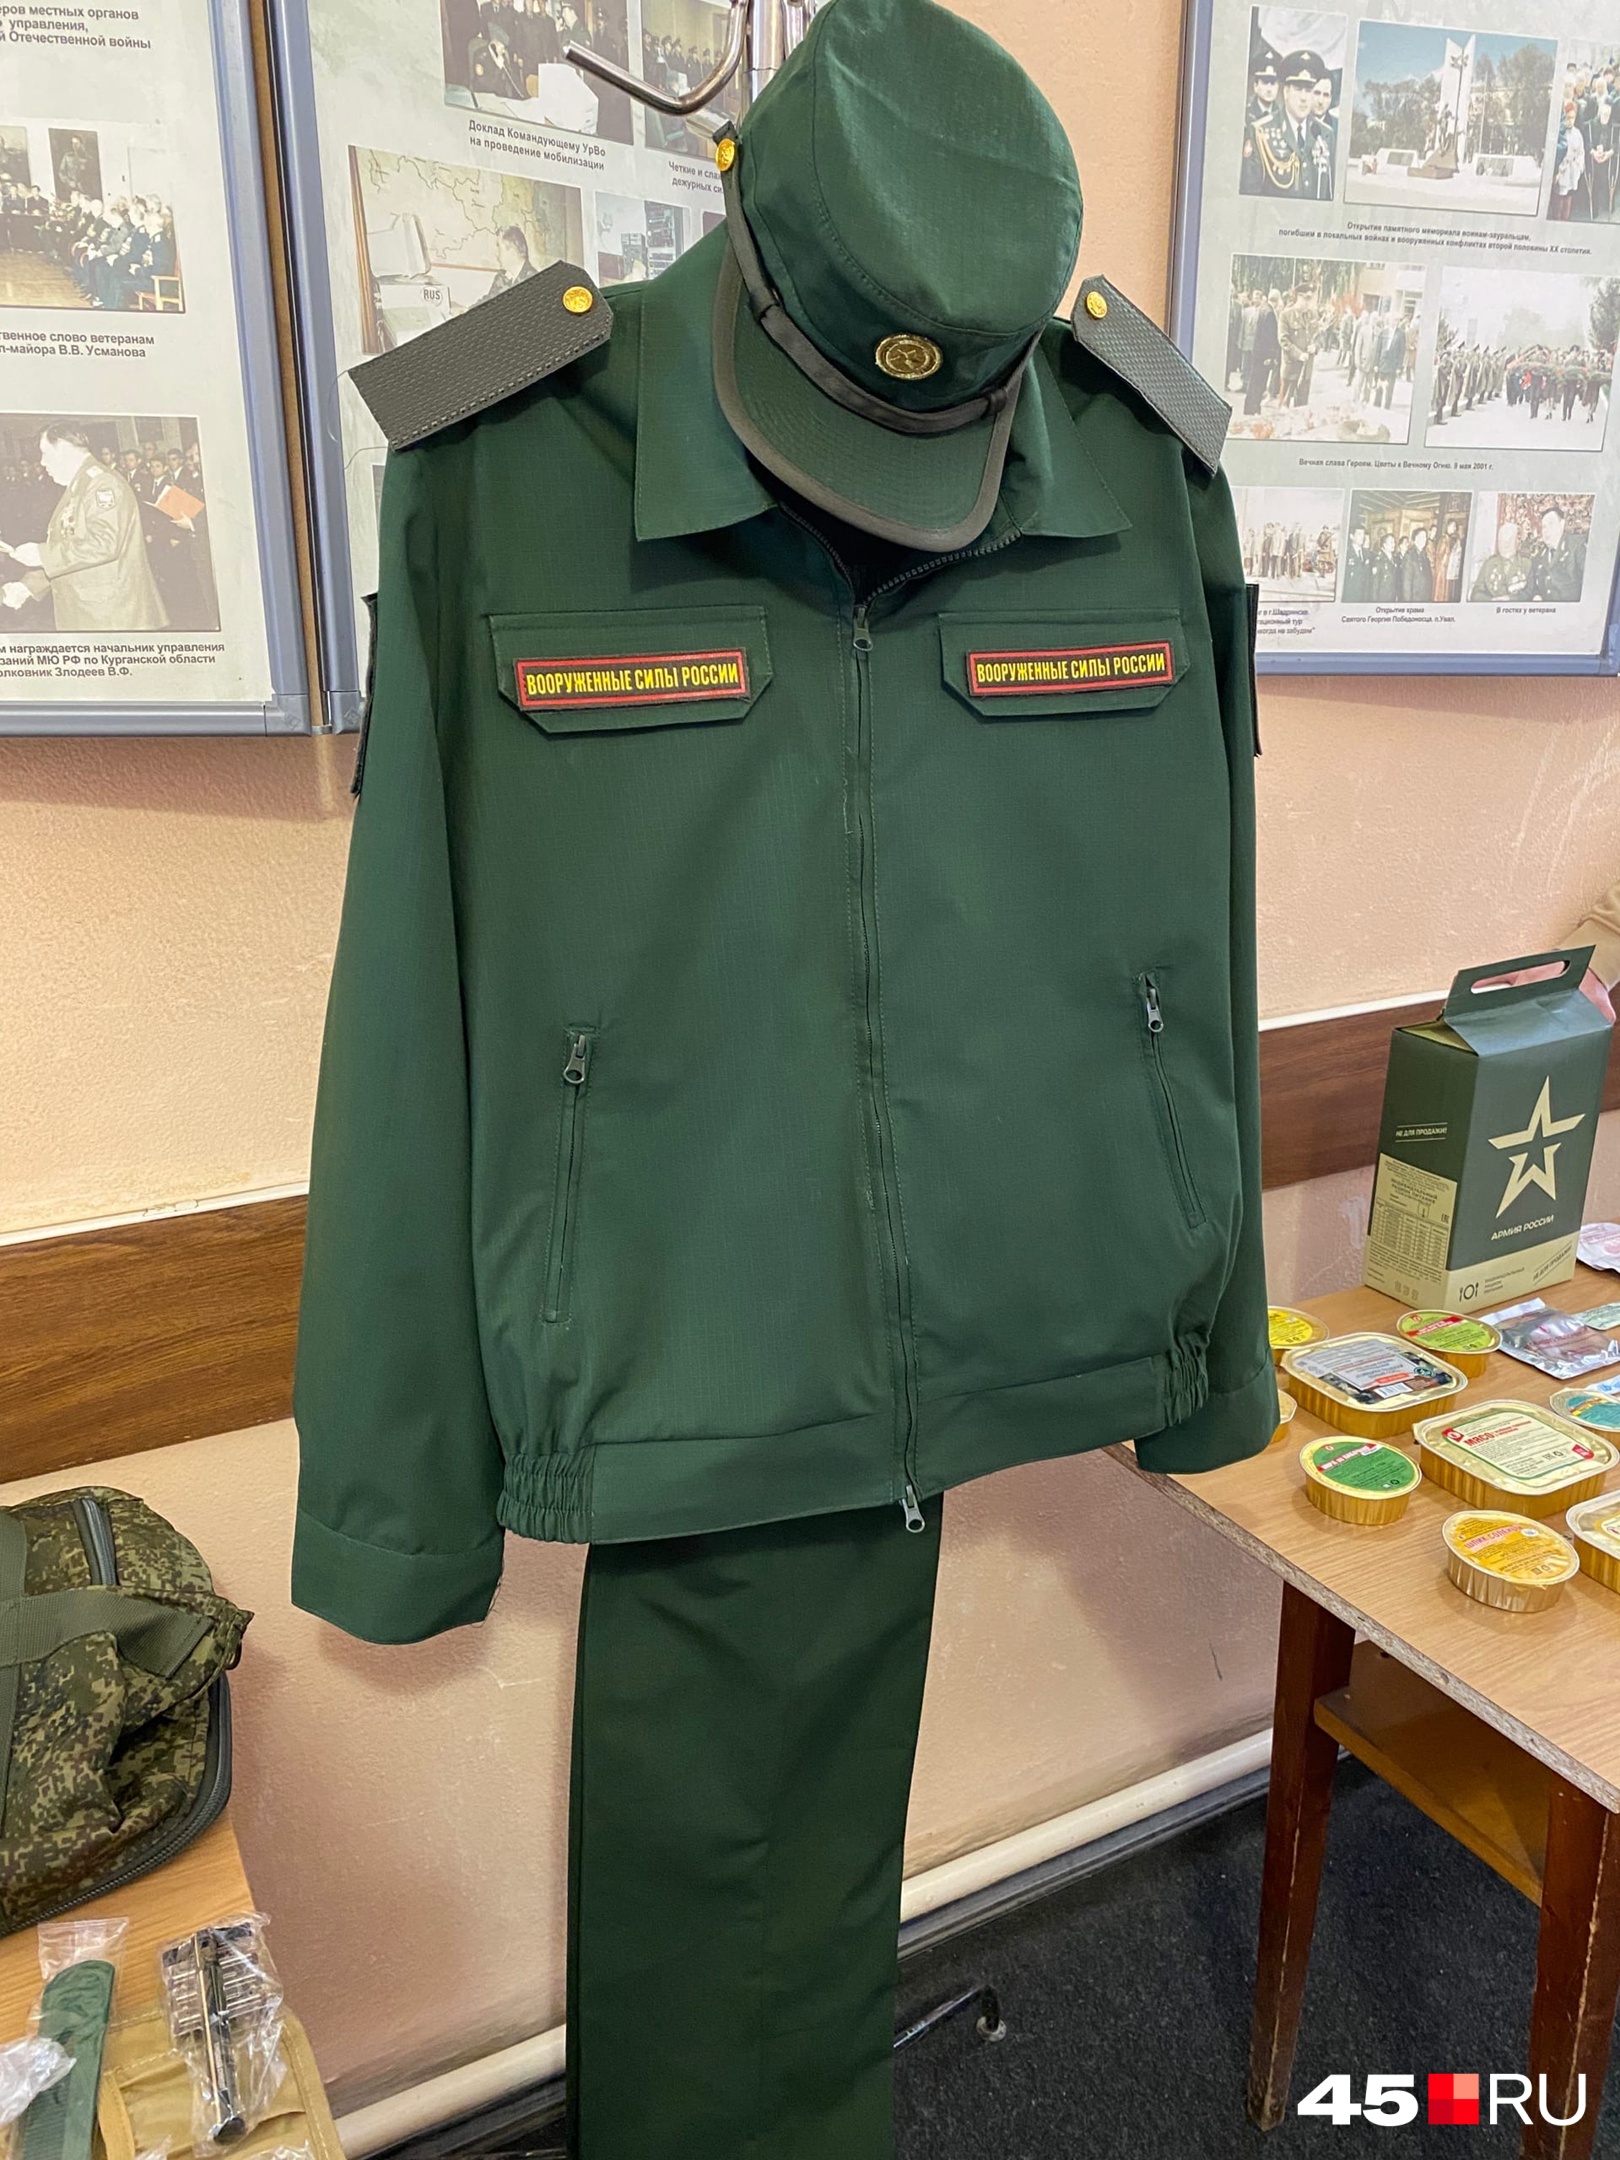 Летний комплект одежды военнослужащего